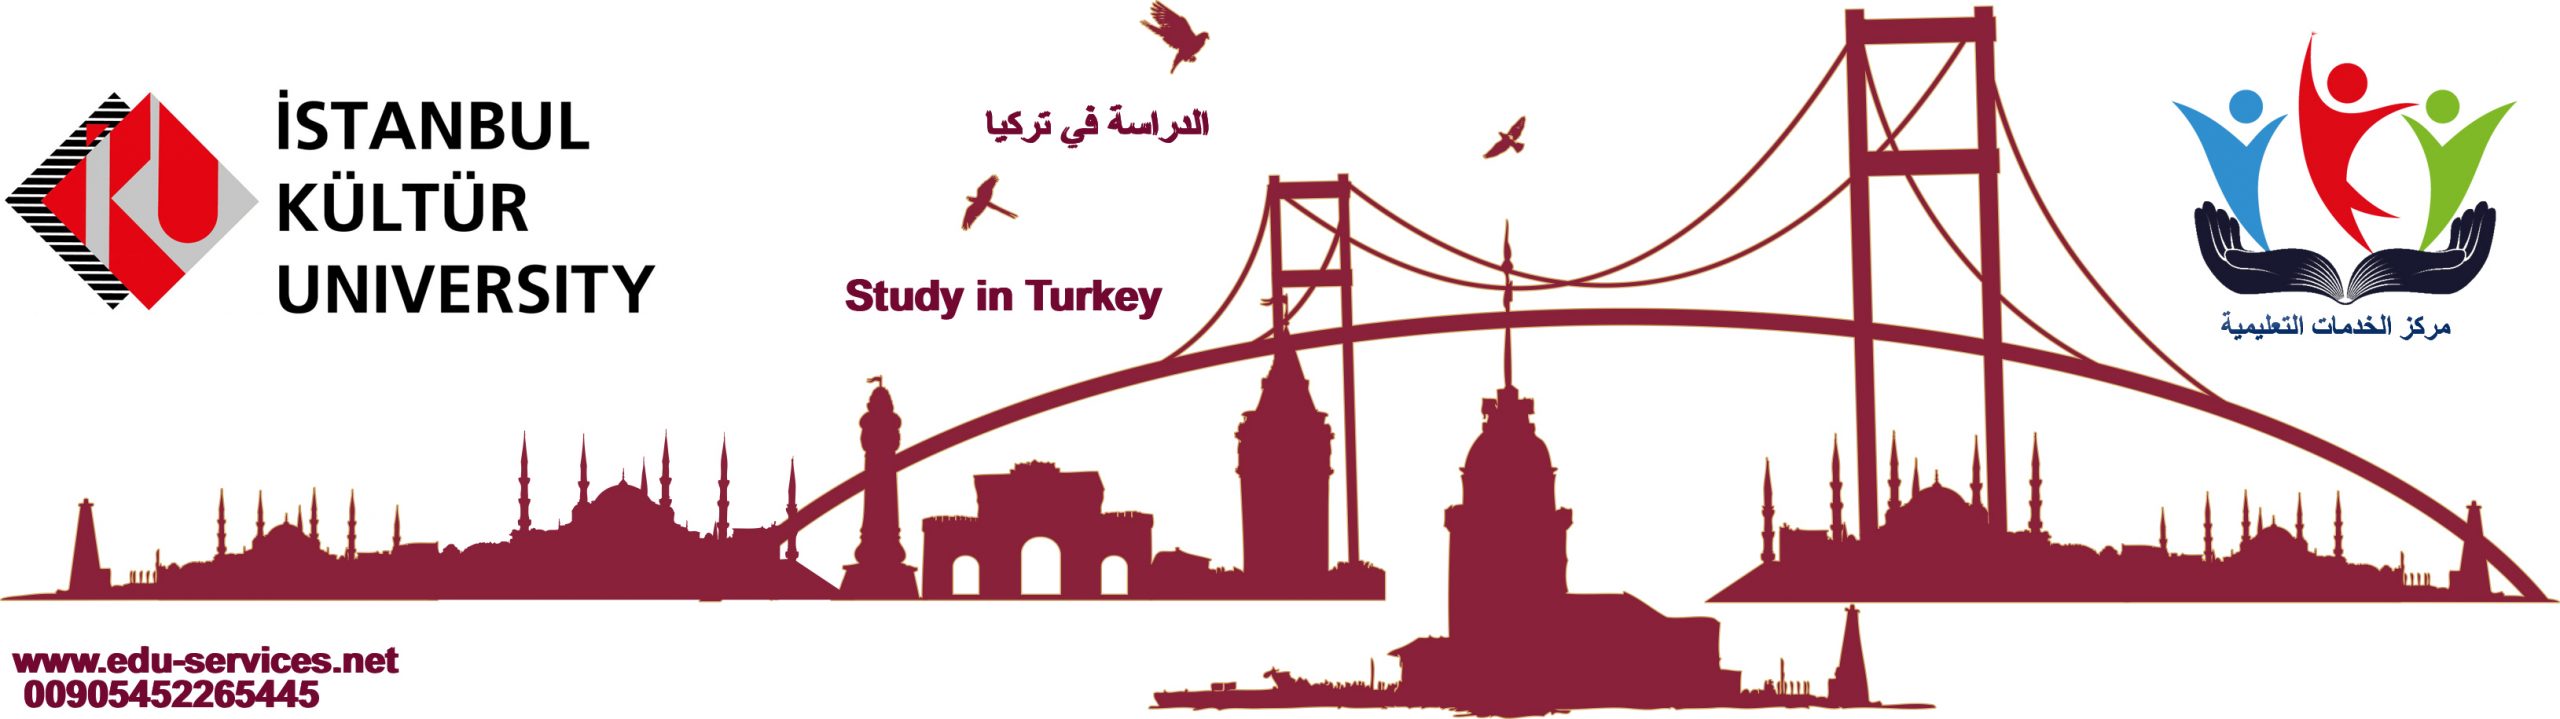 الدراسة في تركيا-جامعة اسطنبول كولتور